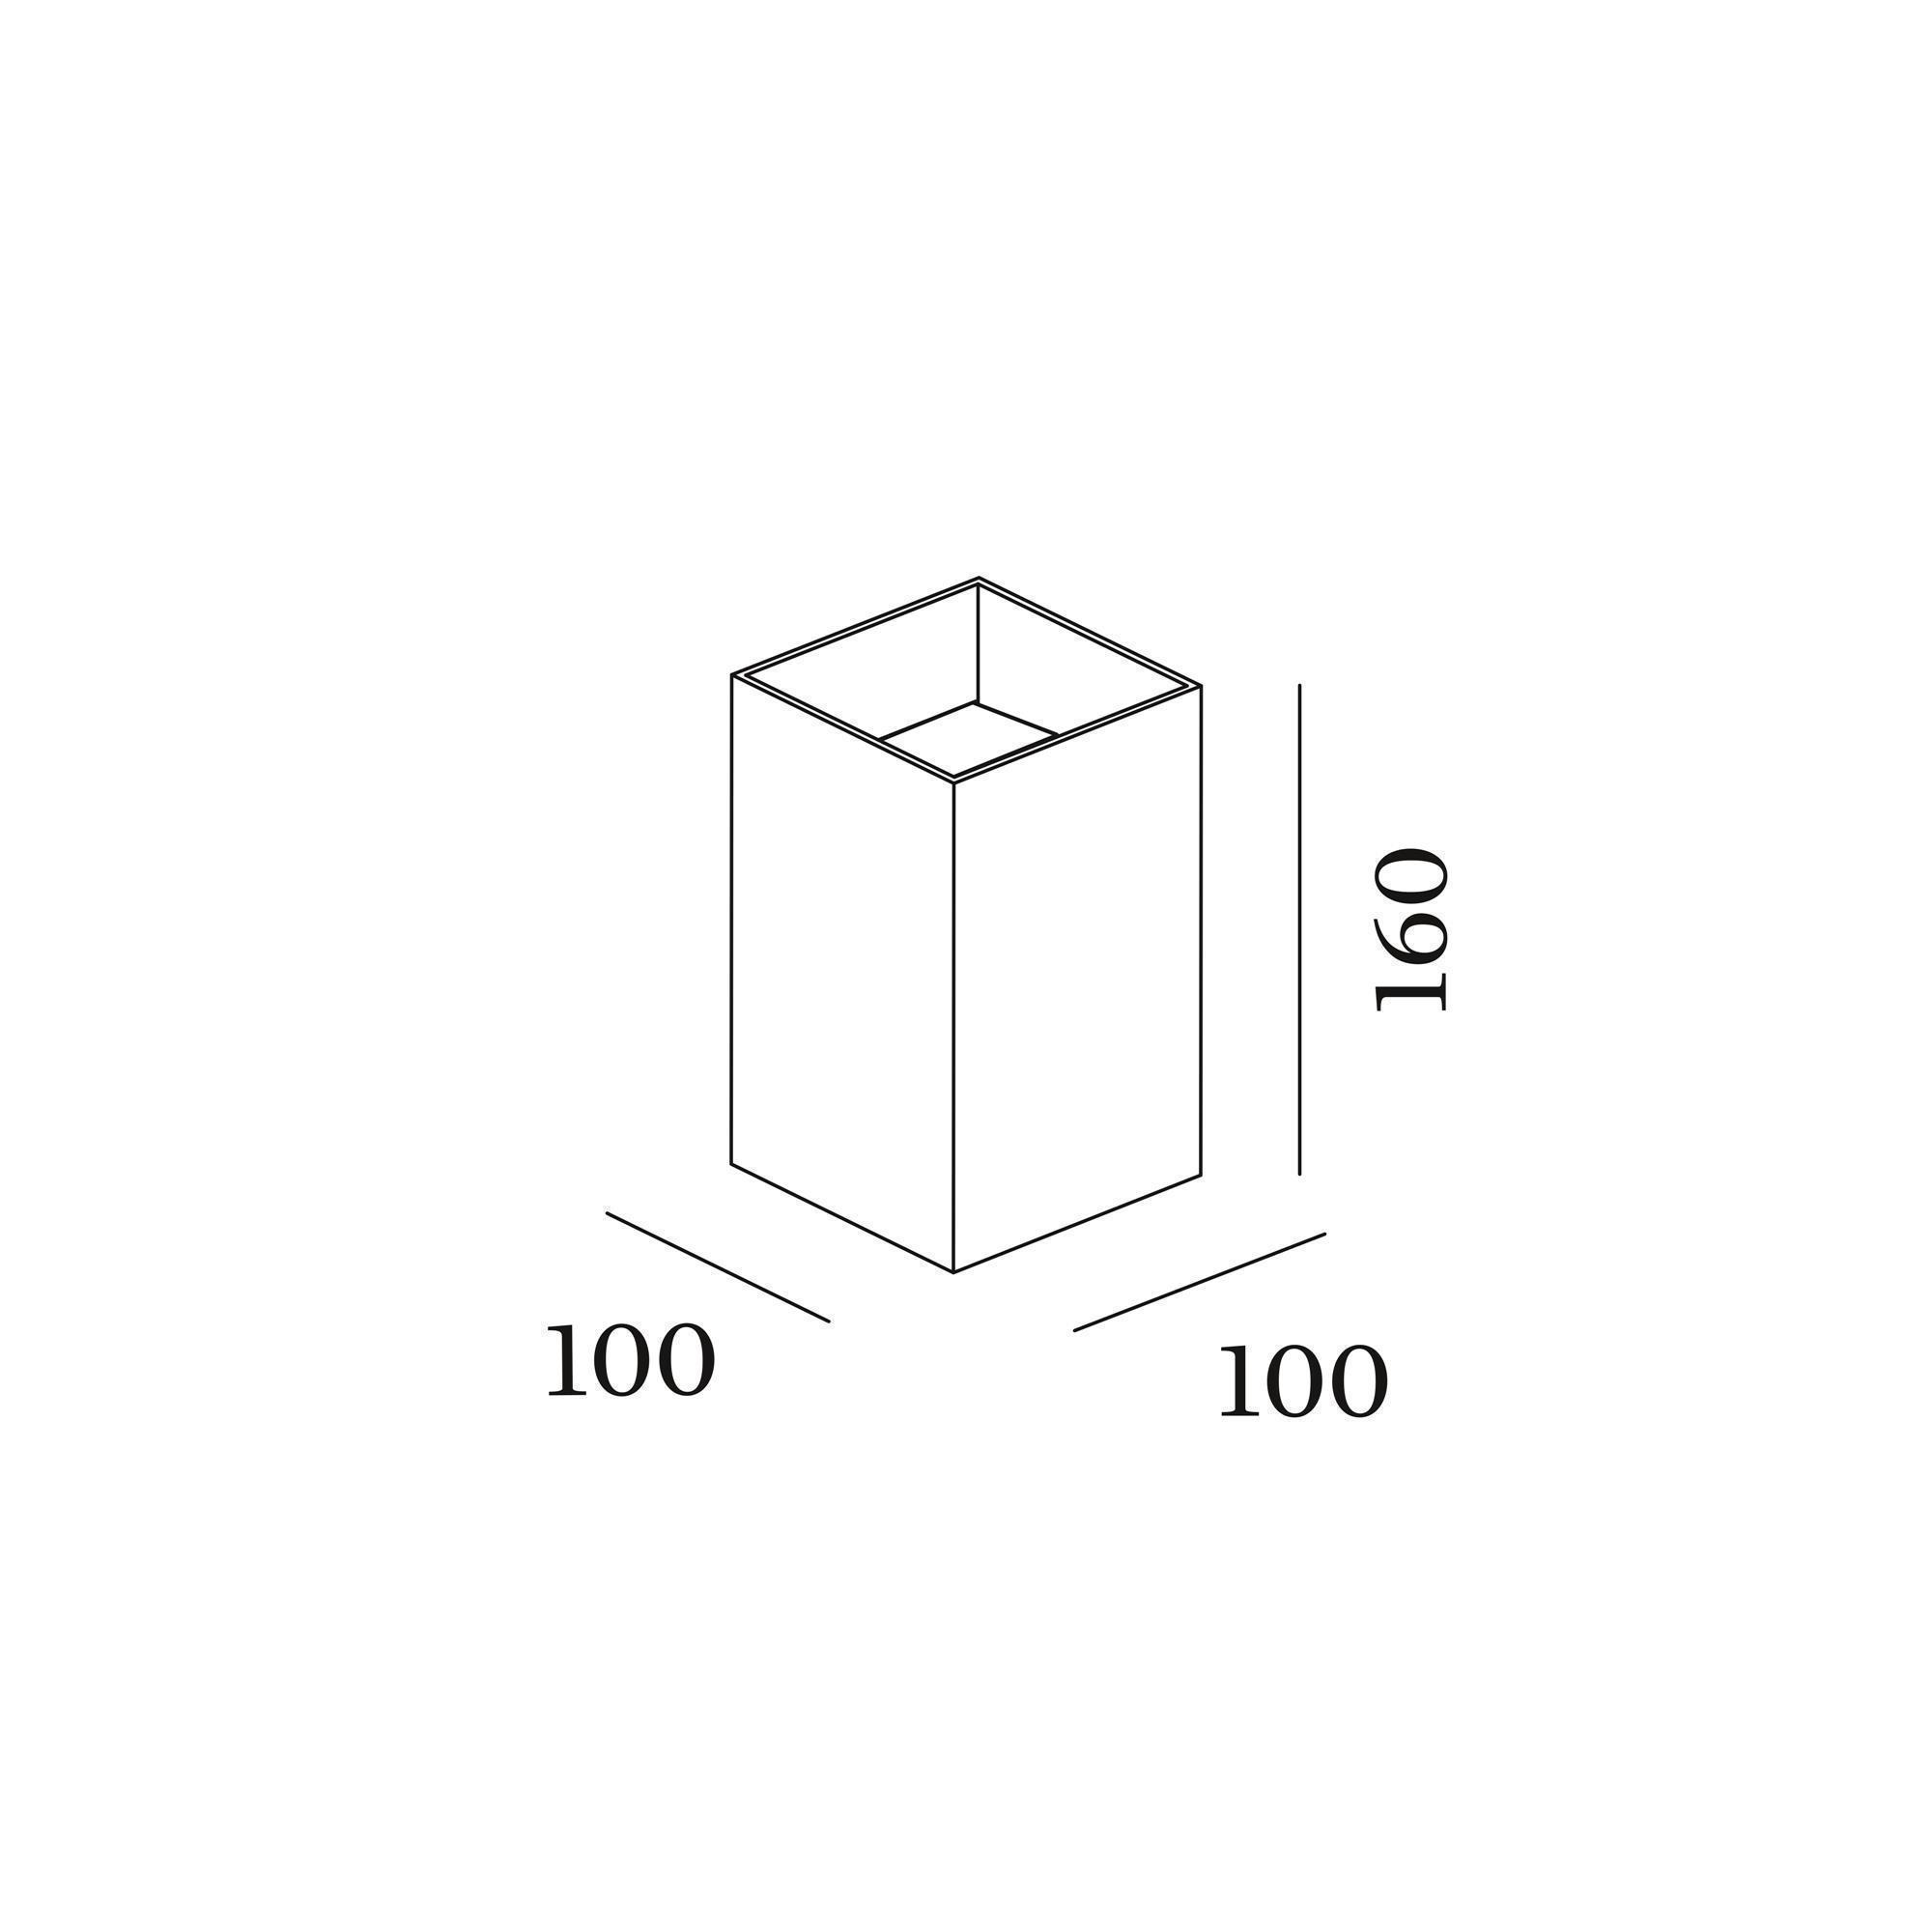 box_exterior_wall_surface_4.0